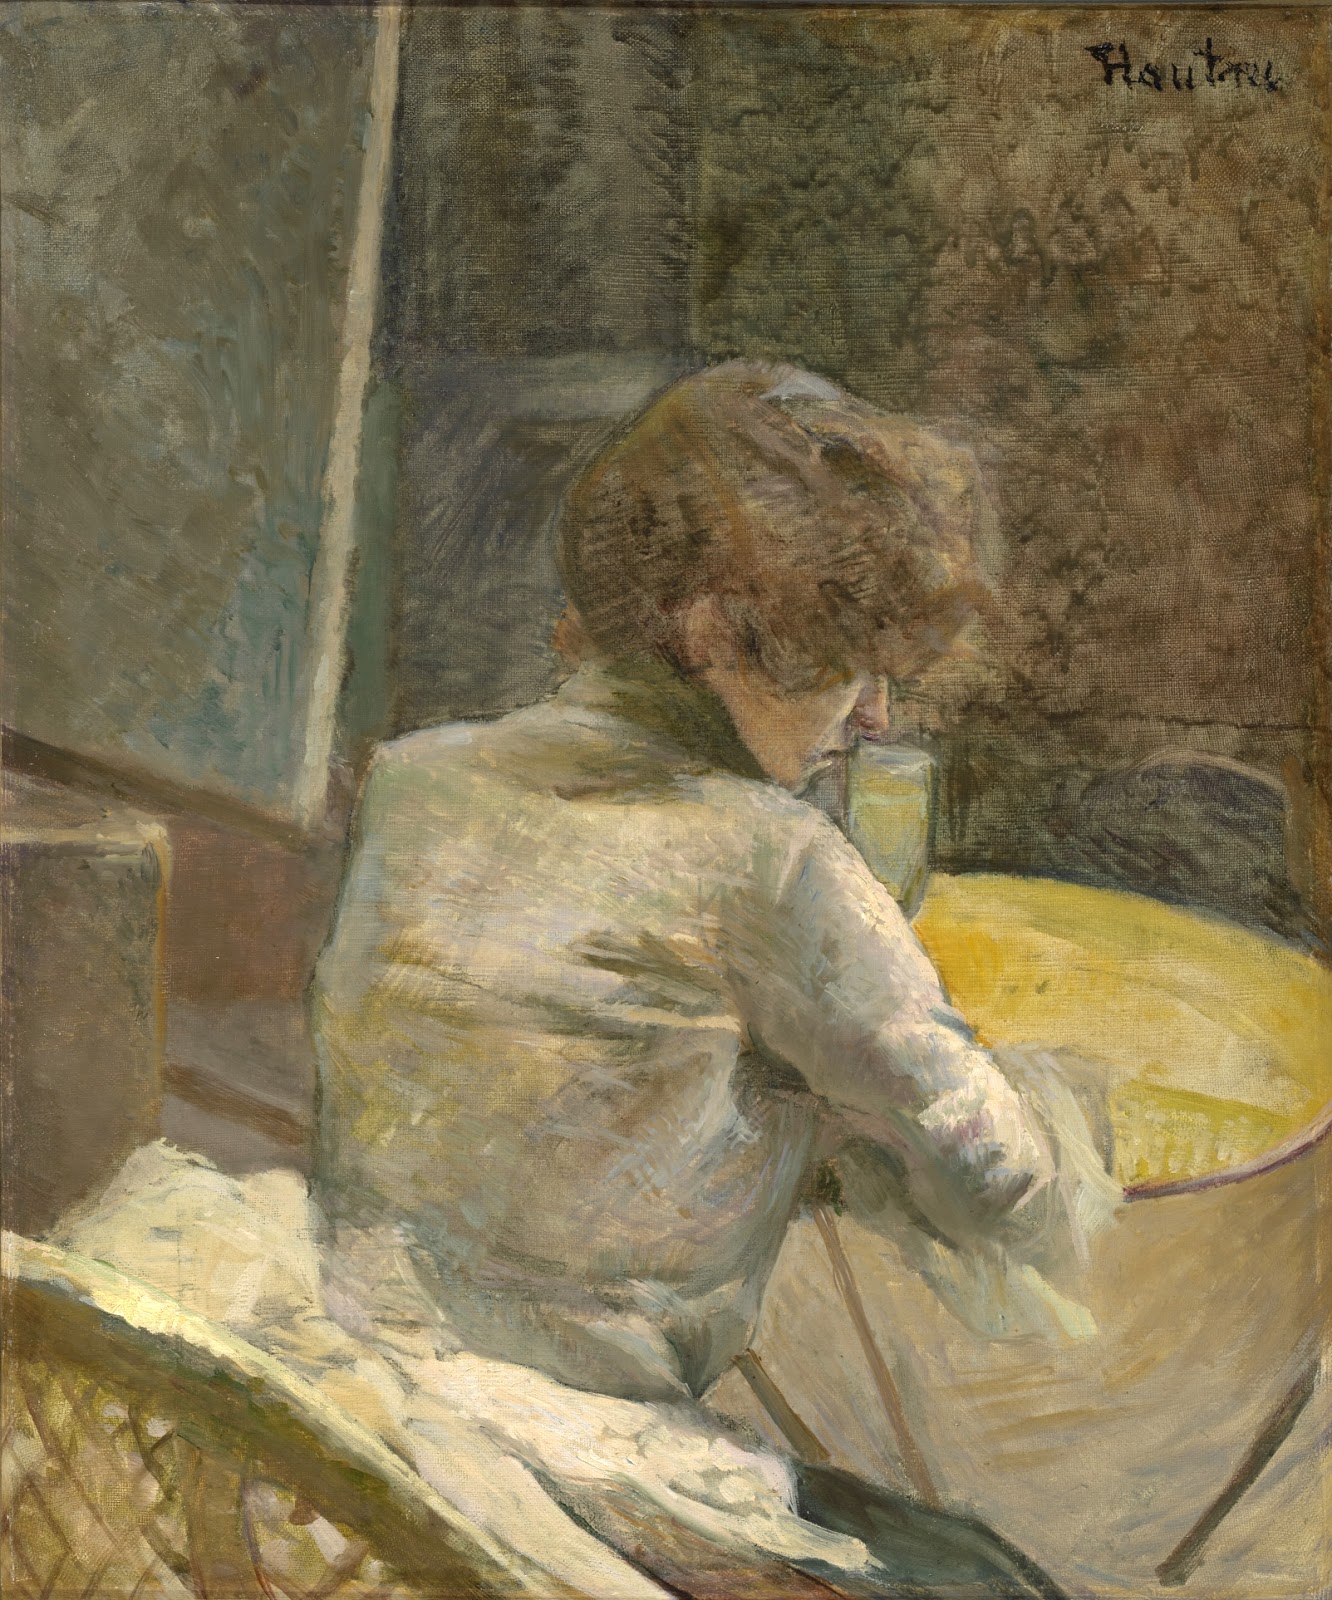 Henri+de+Toulouse+Lautrec-1864-1901 (146).jpg